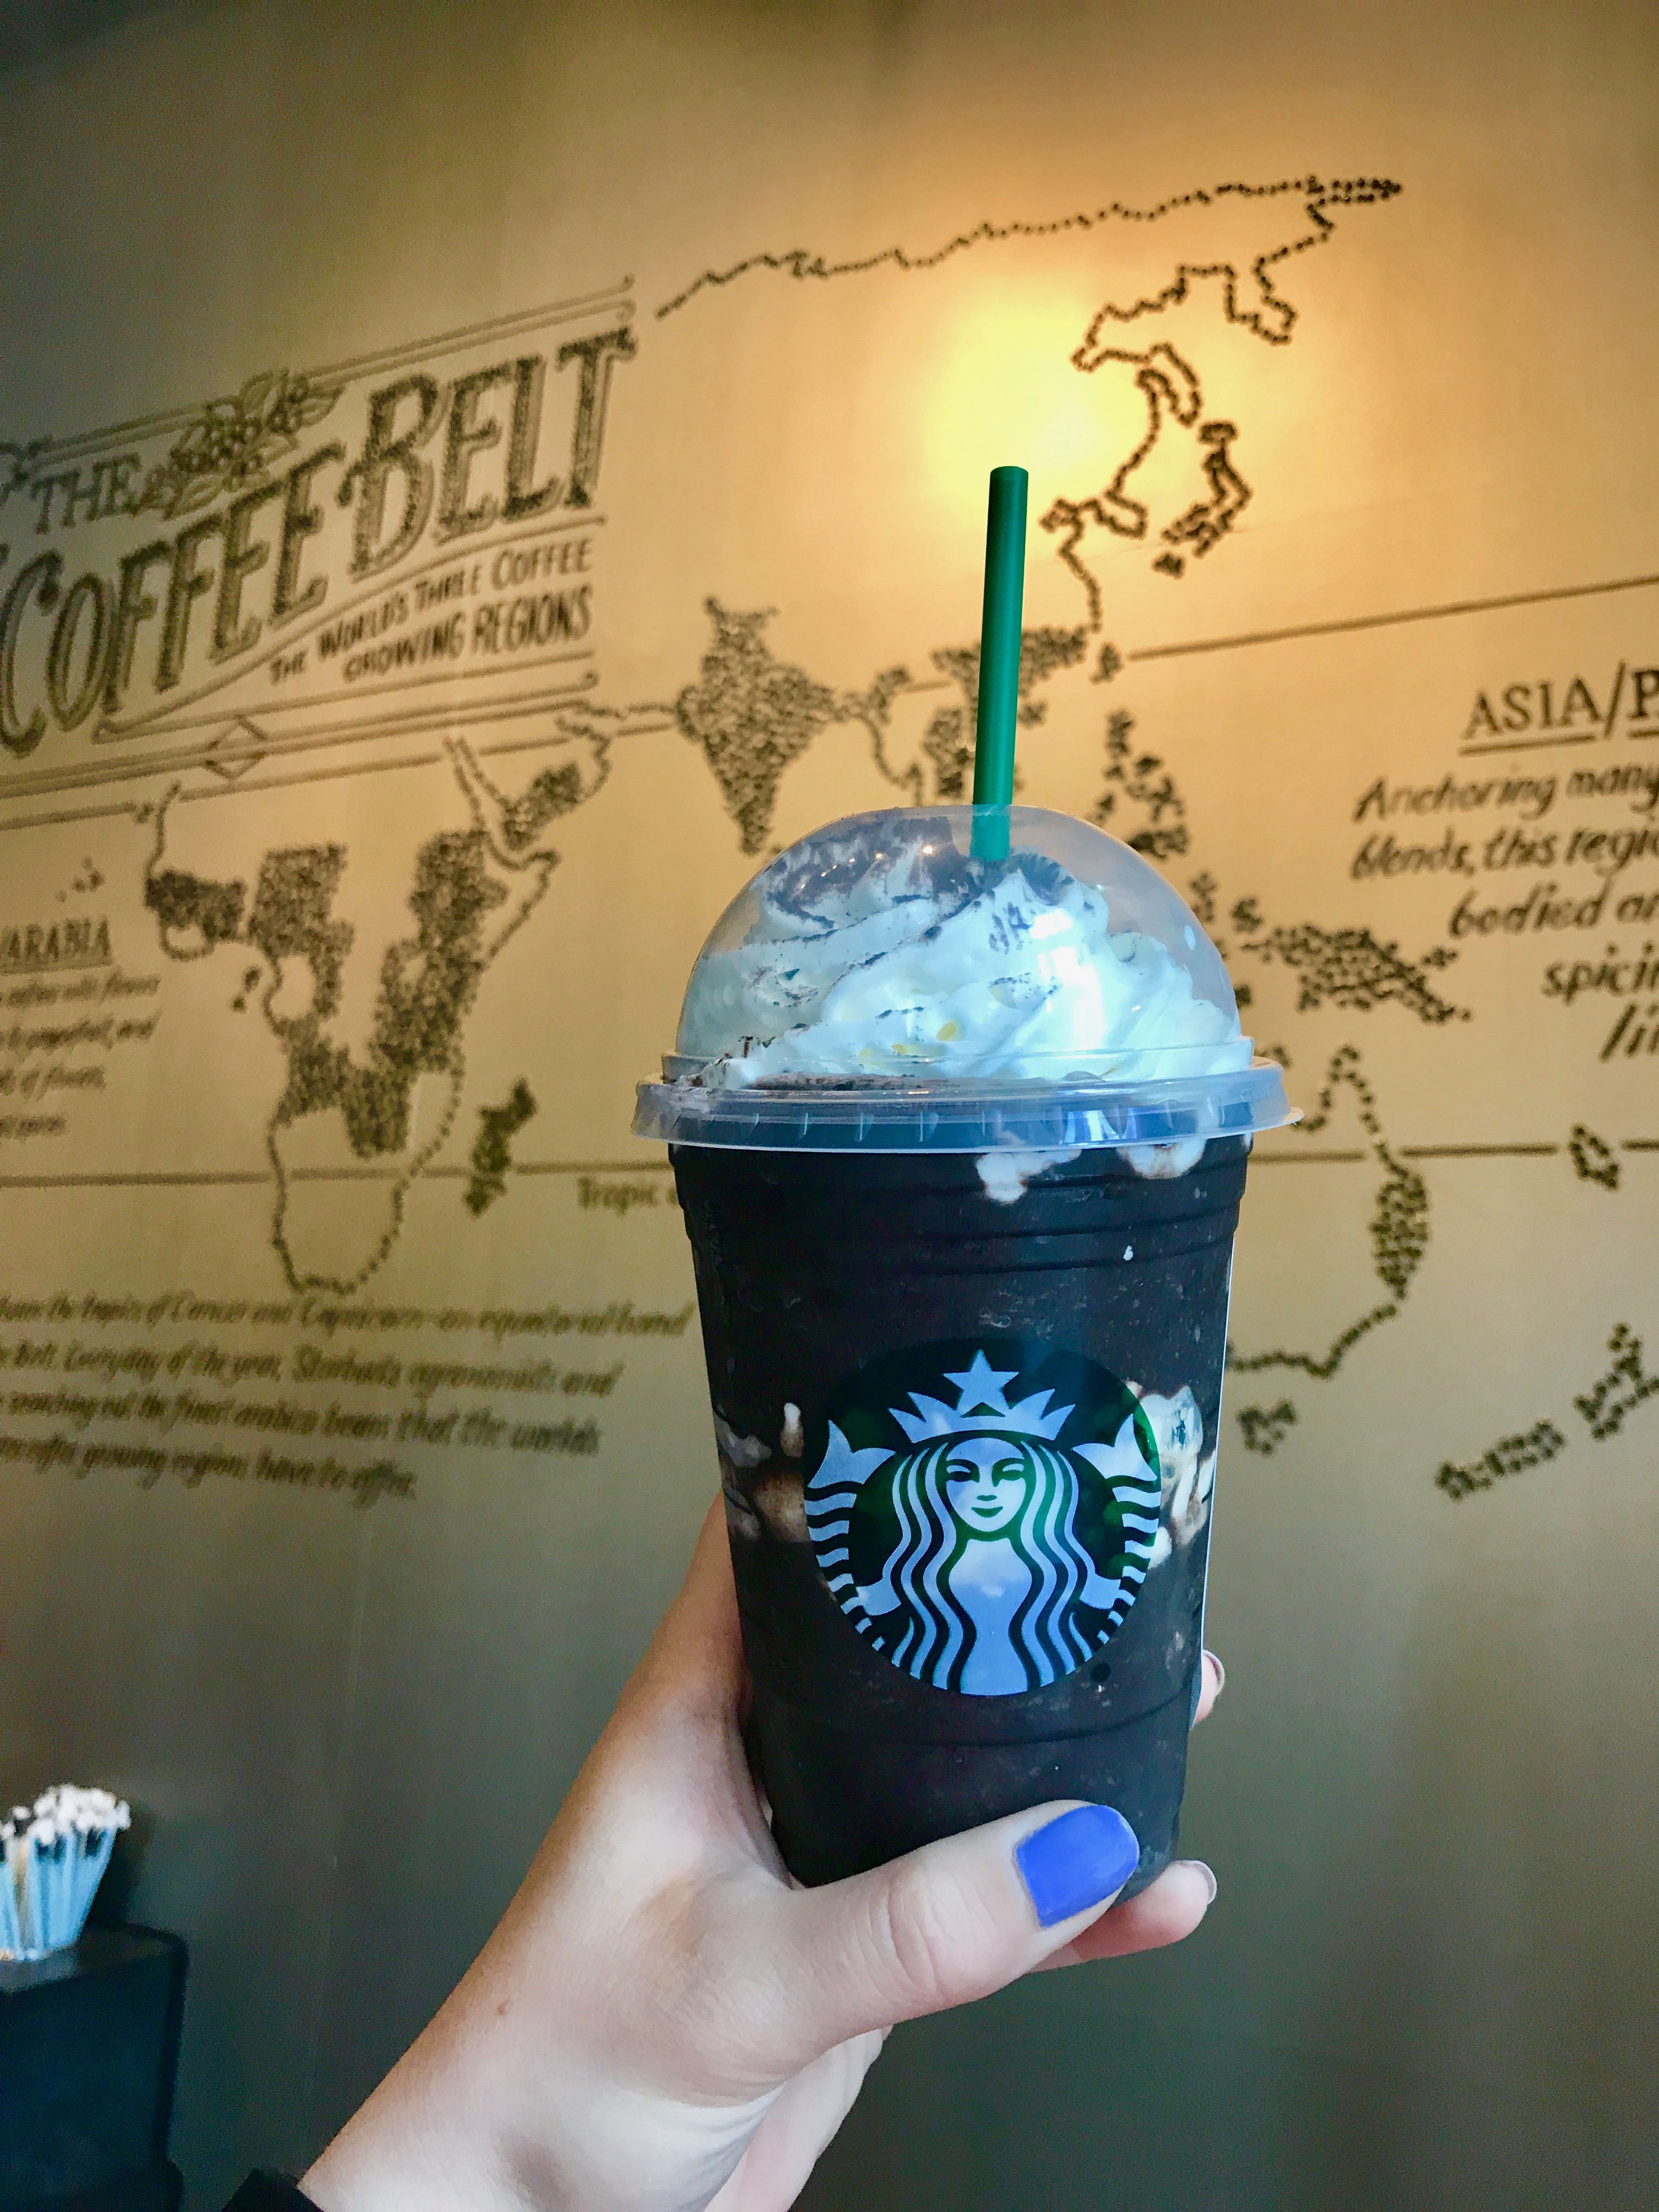 Starbucks Midnight Mint Mocha Frappuccino